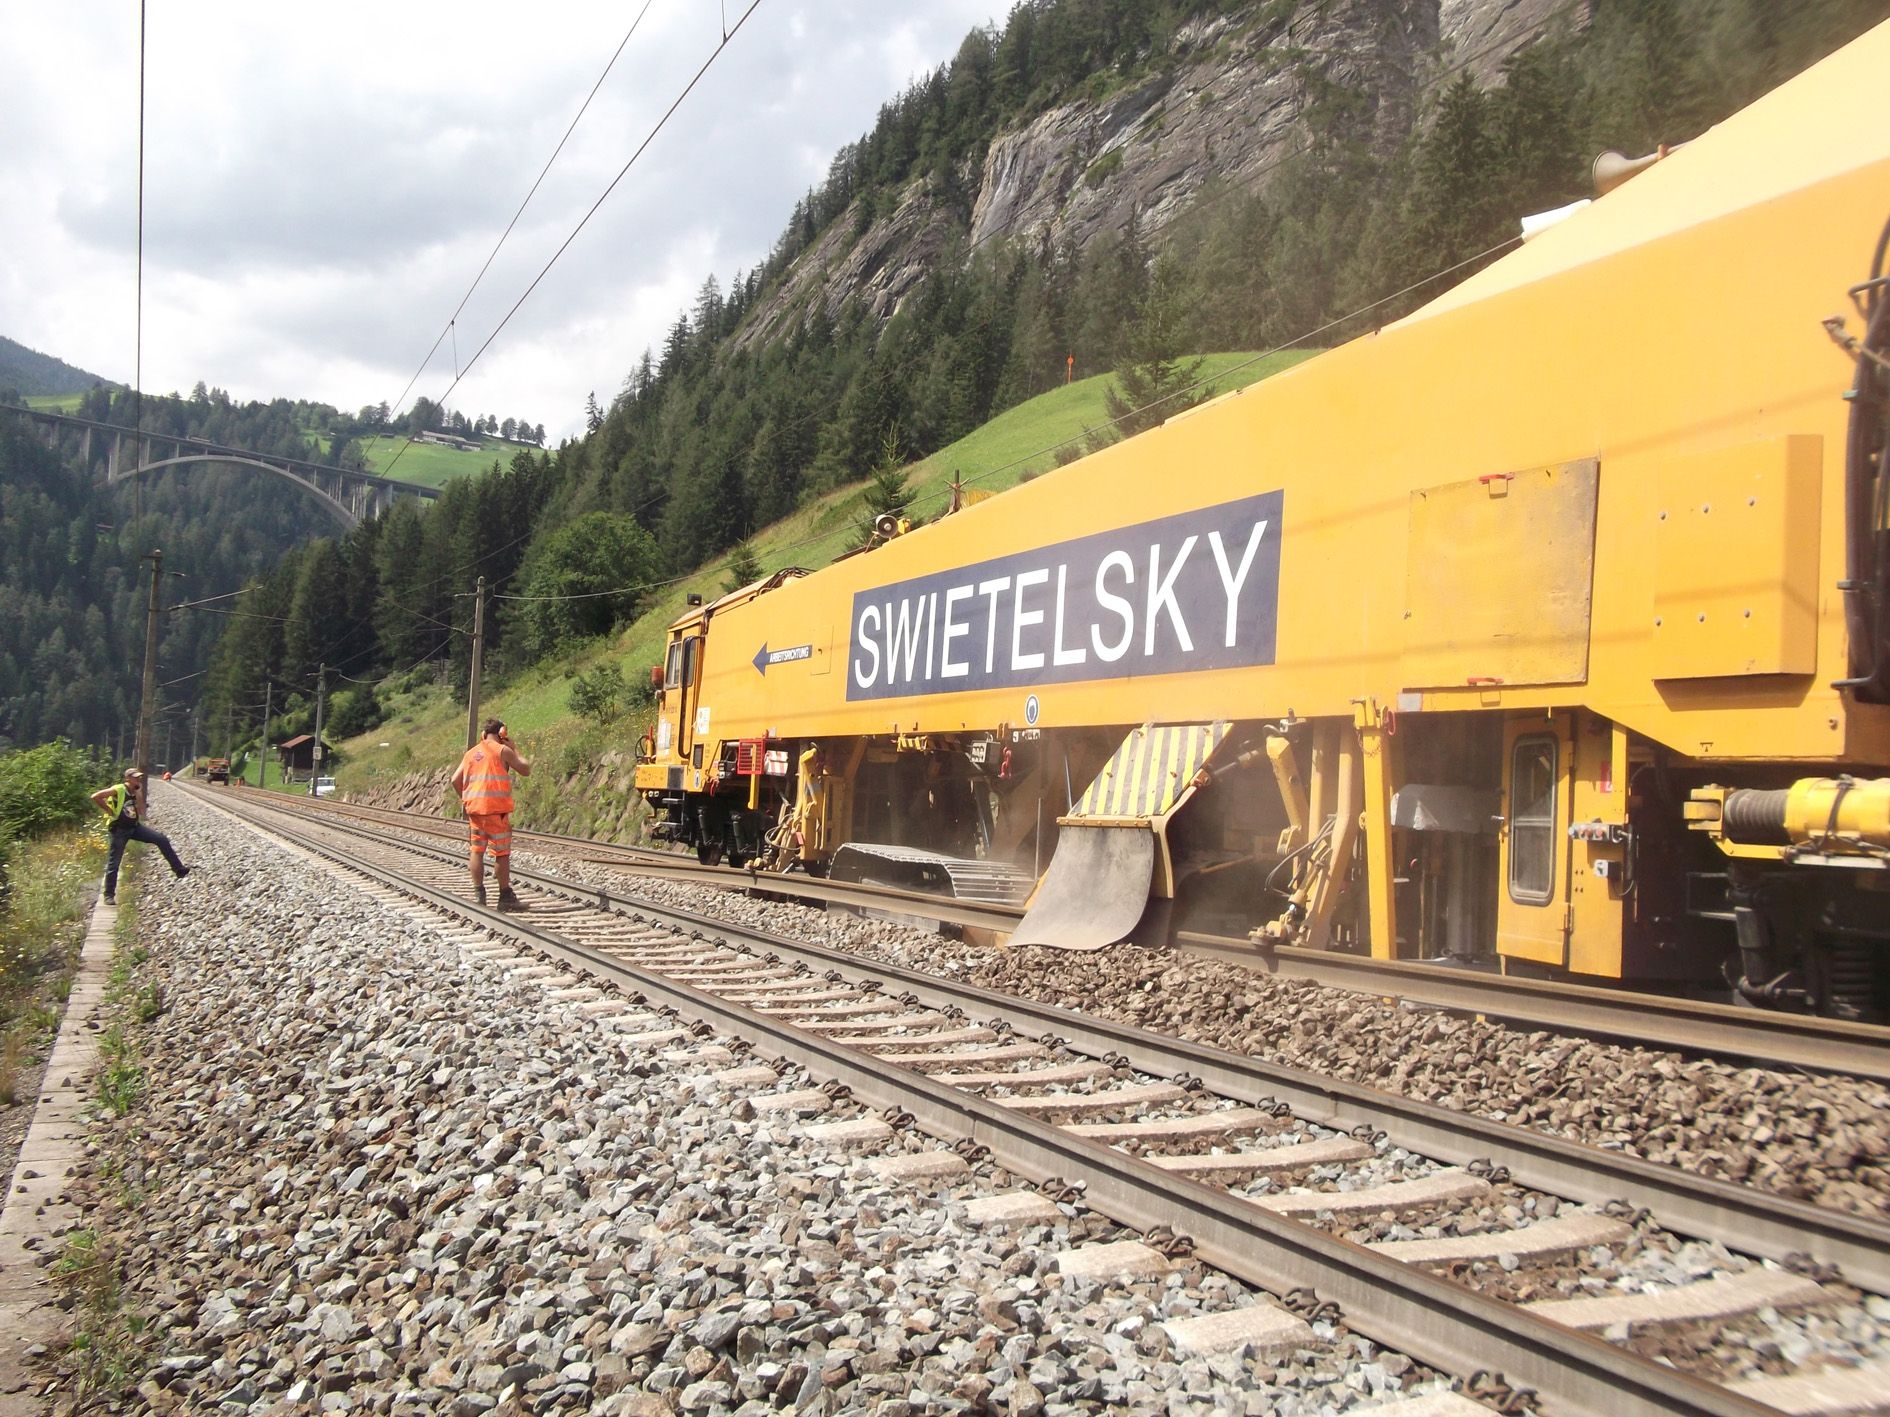 Údržba tratě přes Brennerský průsmyk, ilustrační foto. Pramen: ÖBB